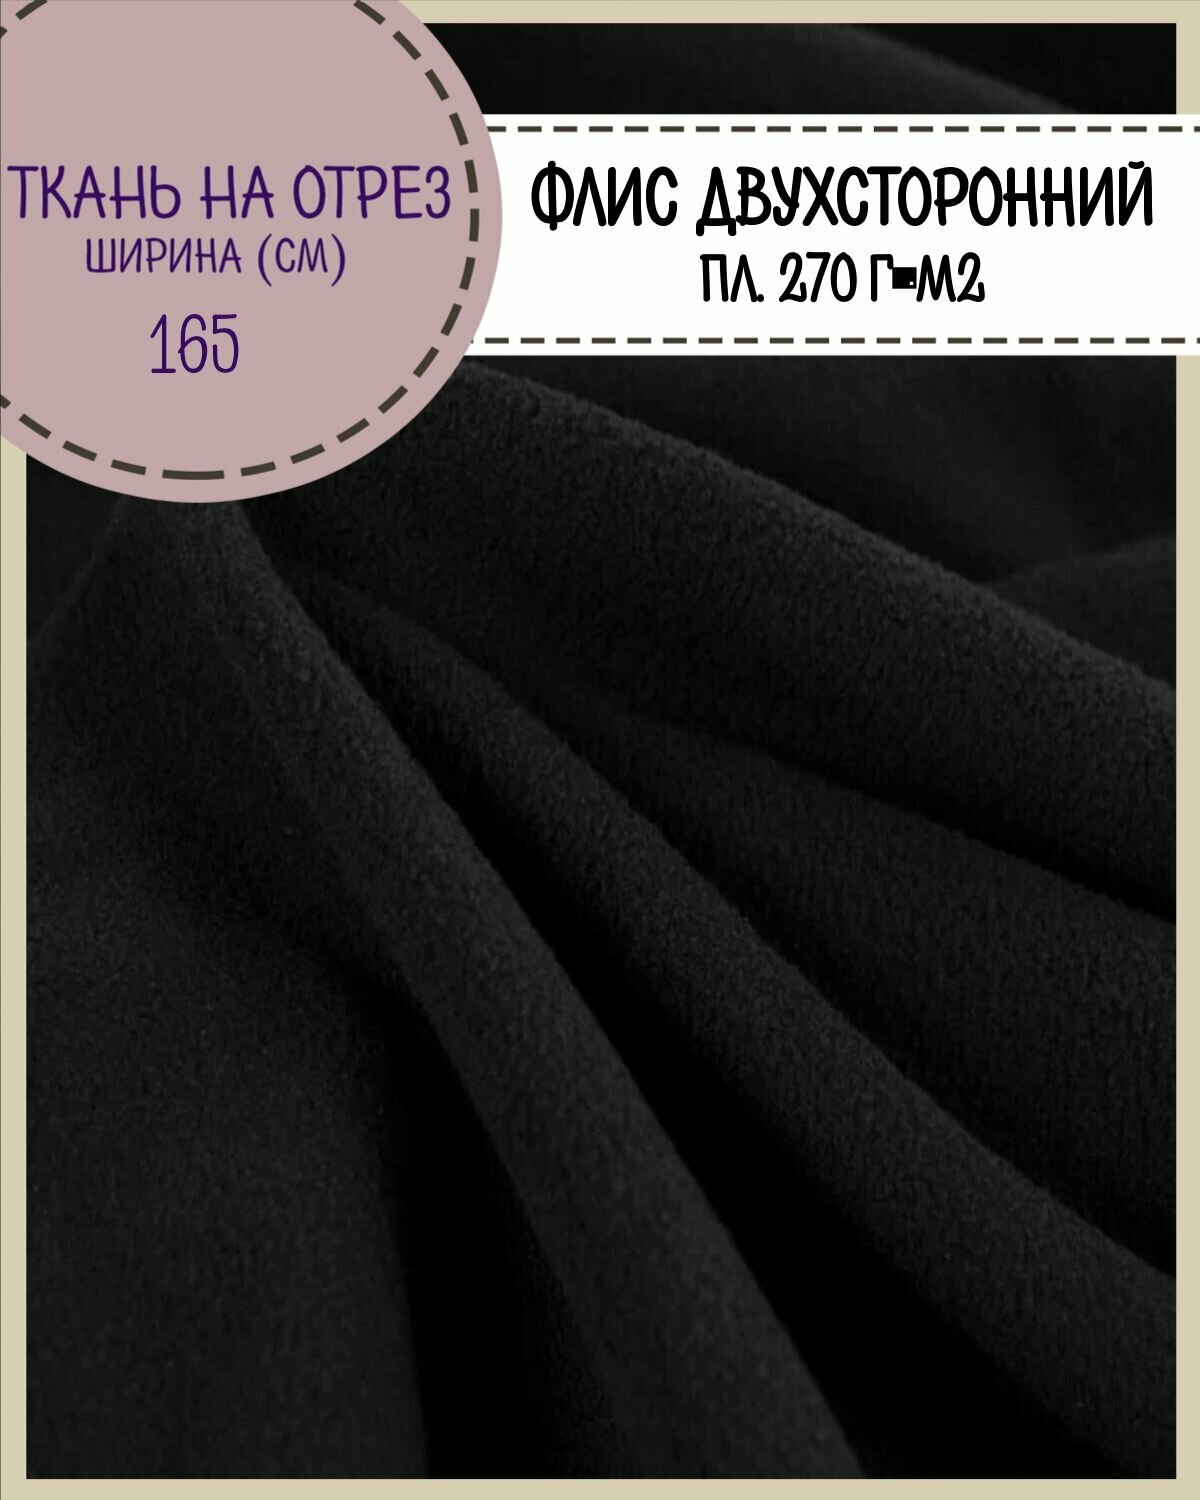 Ткань Флис двухсторонний, цв. черный, пл. 270 г/м2, ш-165 см, на отрез, цена за пог. метр